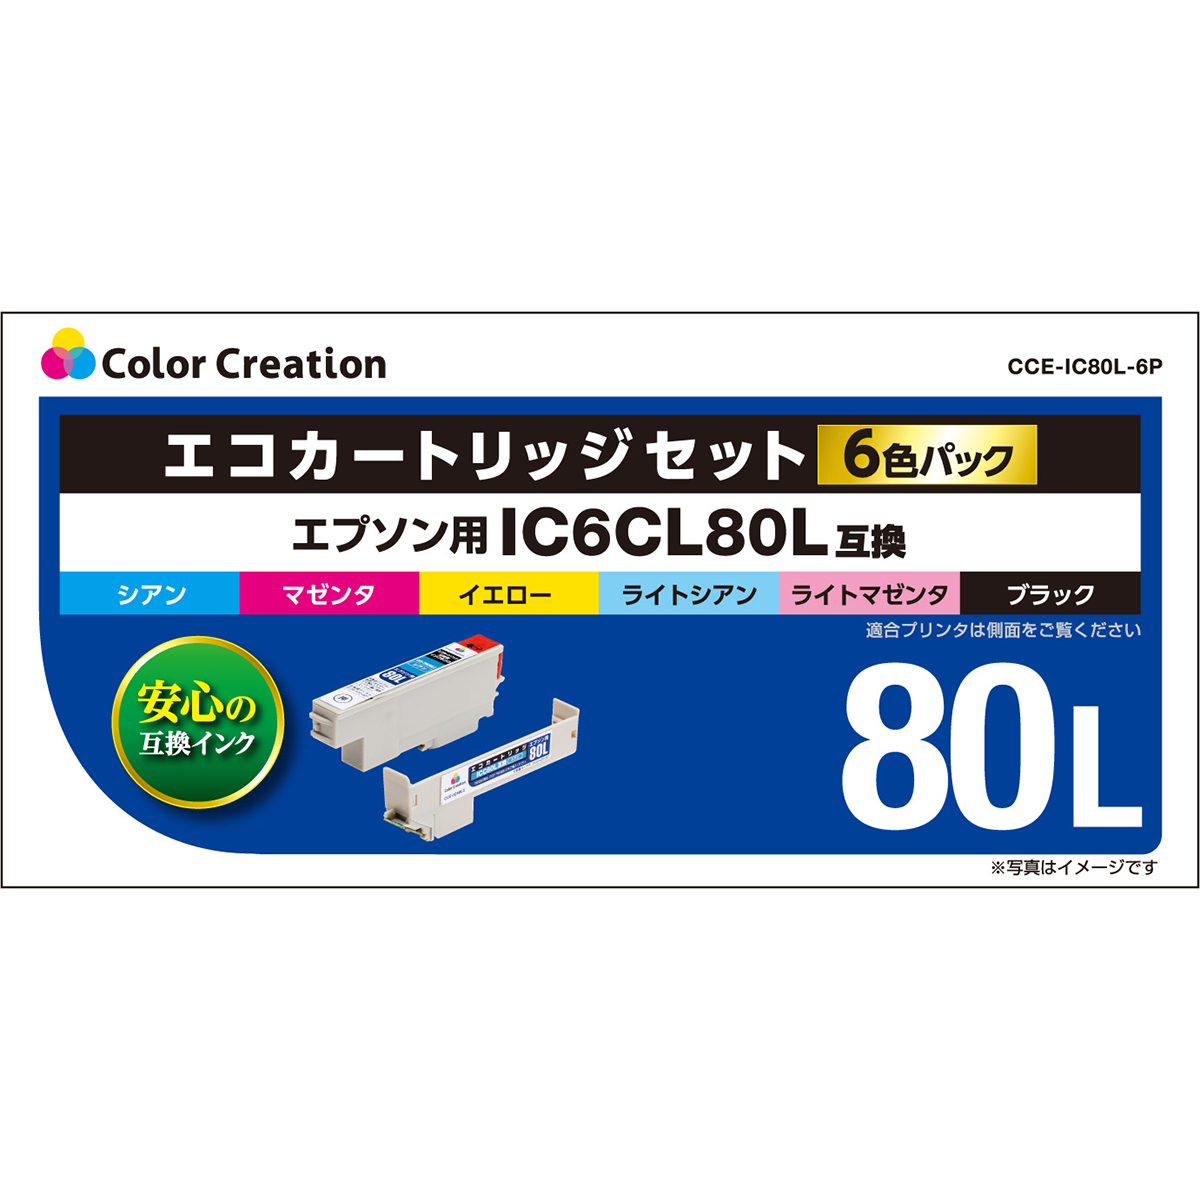 CCE-IC80L-6P